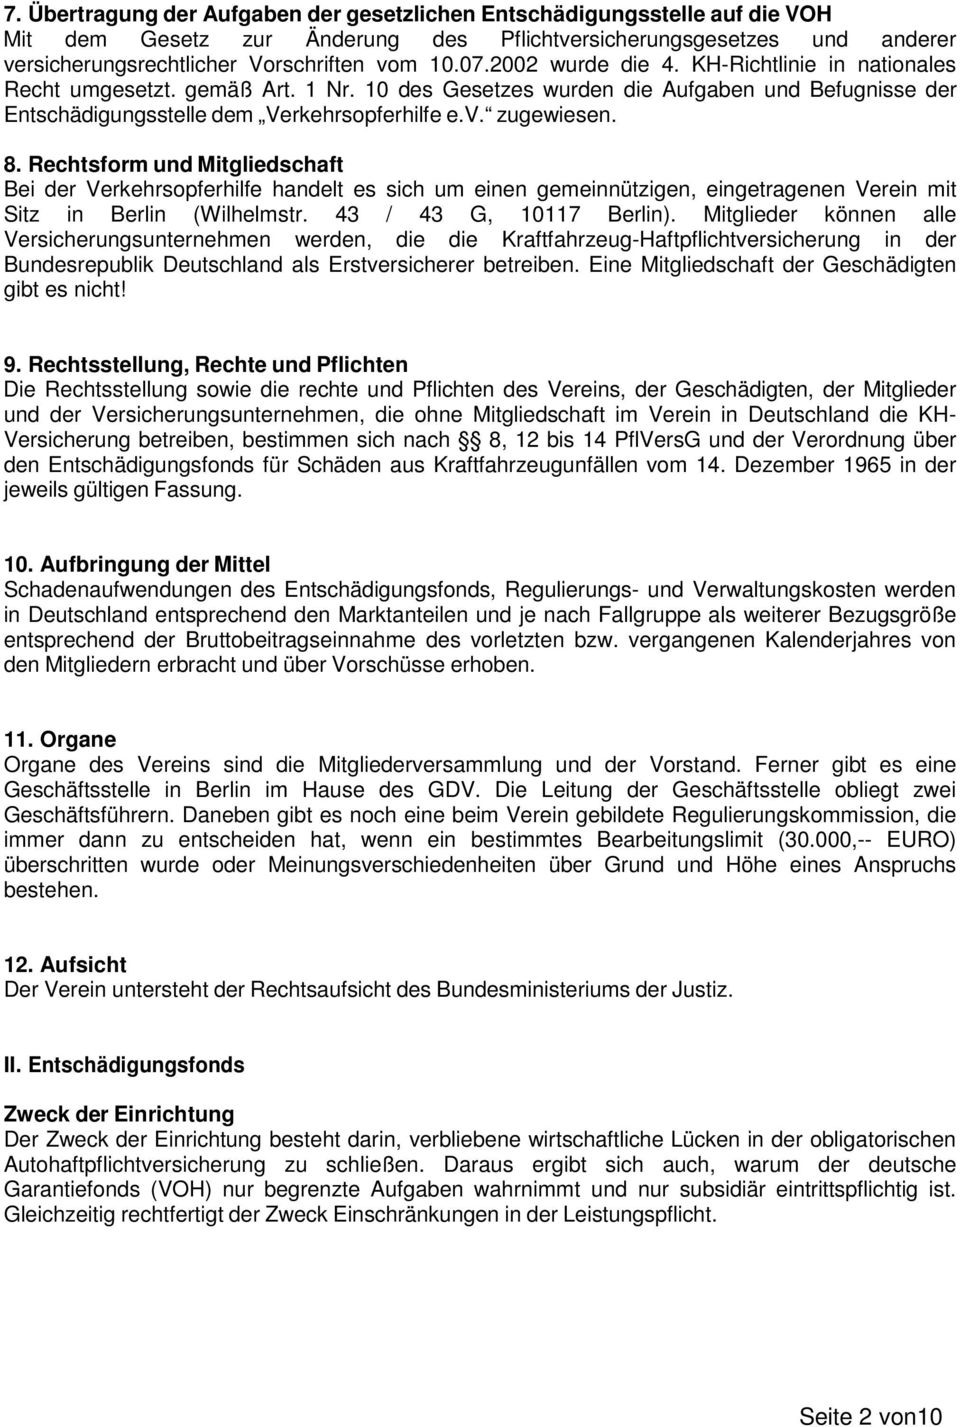 Rechtsform und Mitgliedschaft Bei der Verkehrsopferhilfe handelt es sich um einen gemeinnützigen, eingetragenen Verein mit Sitz in Berlin (Wilhelmstr. 43 / 43 G, 10117 Berlin).